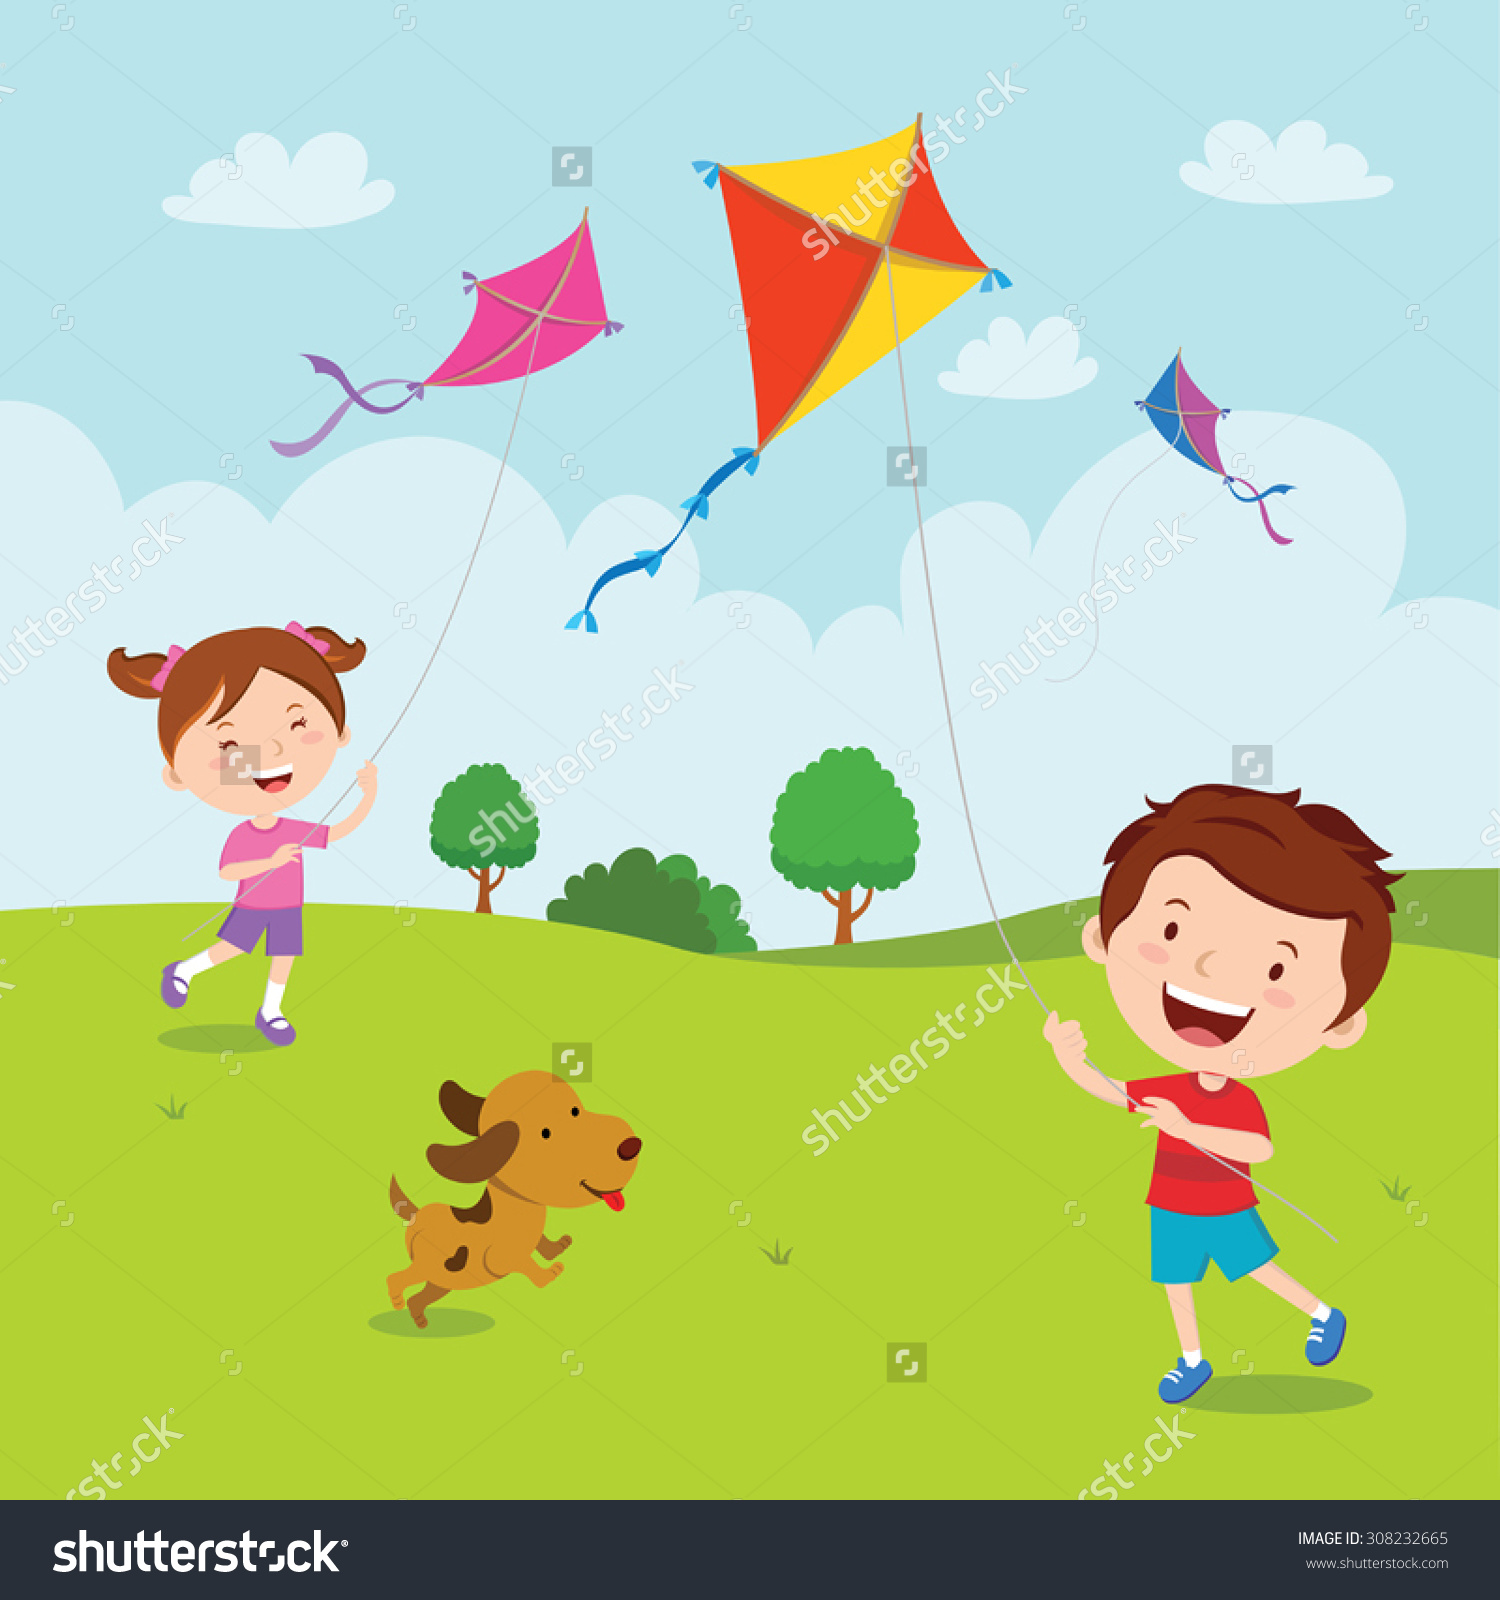 dog kite cartoon